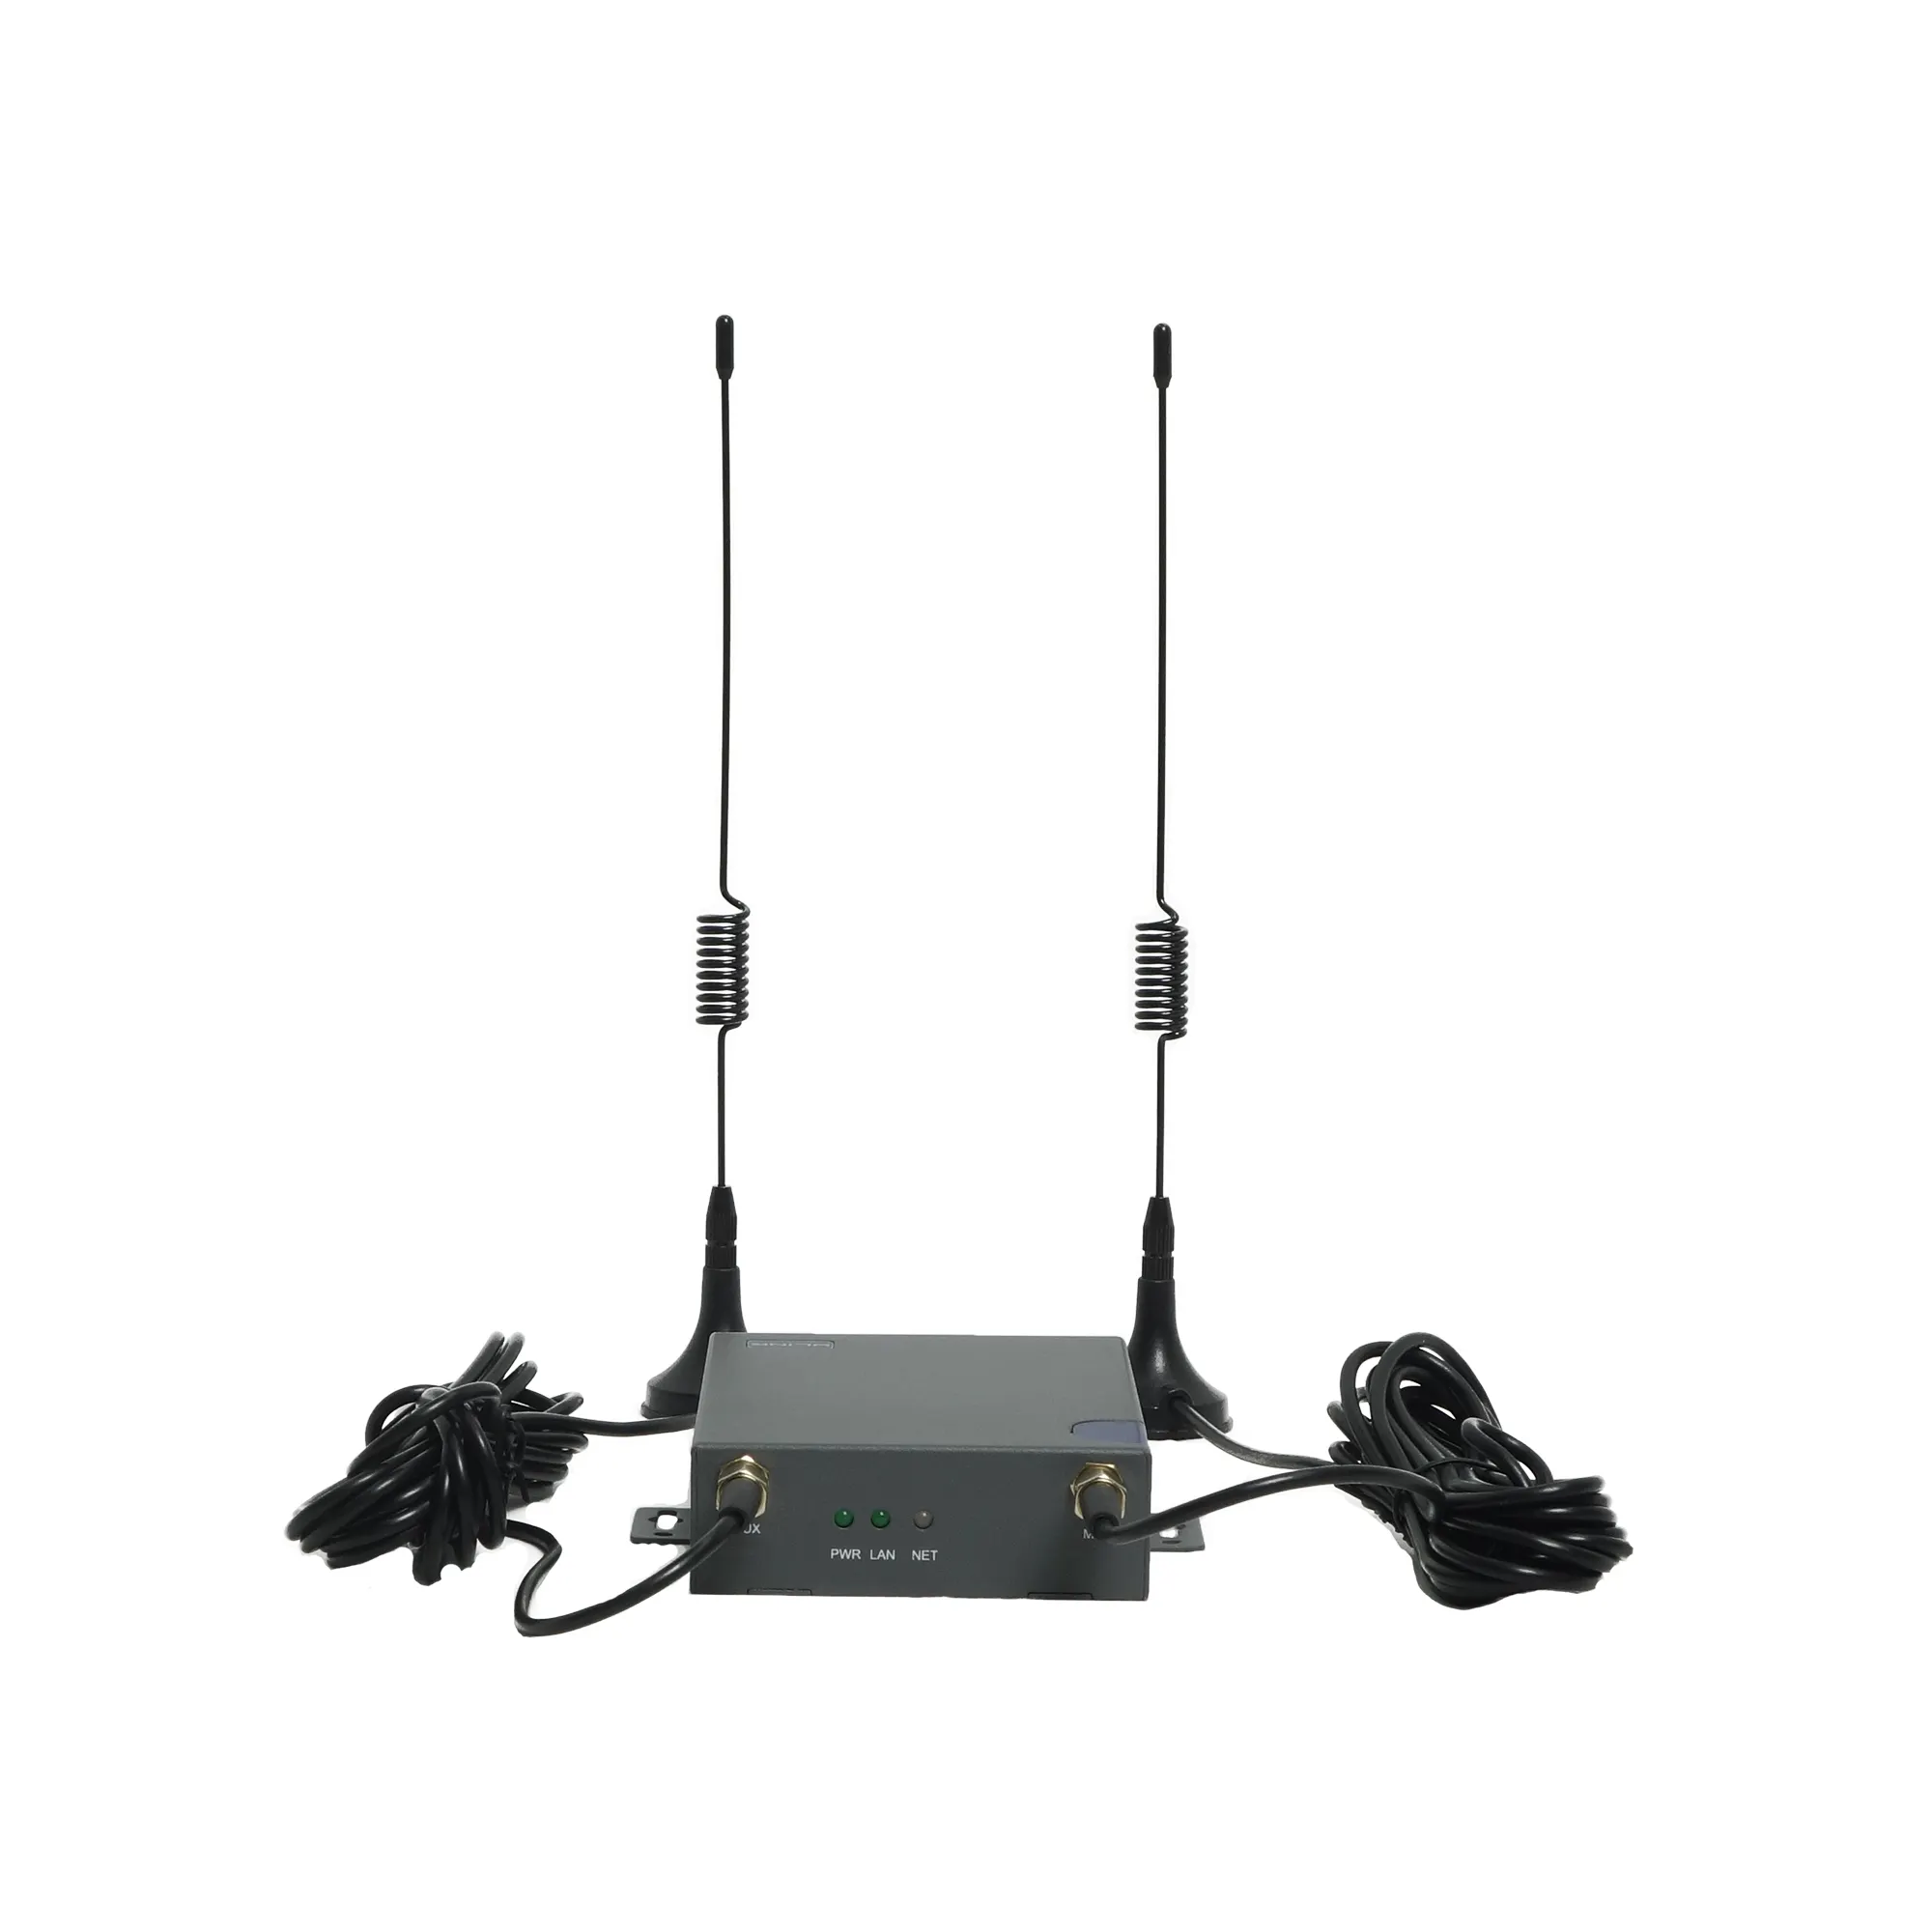 Nouveauté WLINK R130 routeur de passerelle 4G double SIM eSIM LAN RS232 RS485 Modbus VPN Wireguard routeur 4G de qualité industrielle